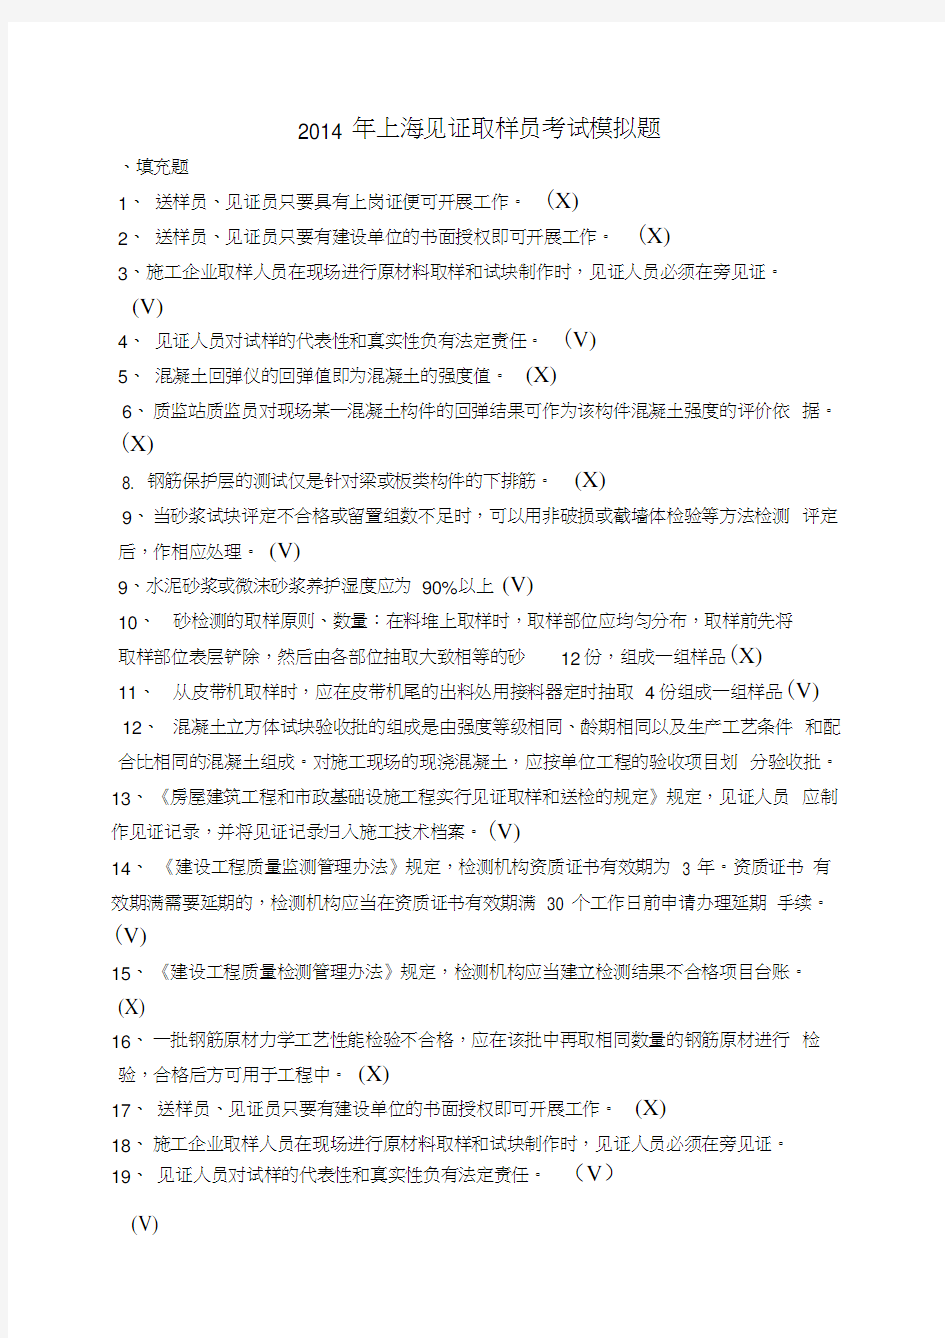 32014年上海见证取样员考试模拟题